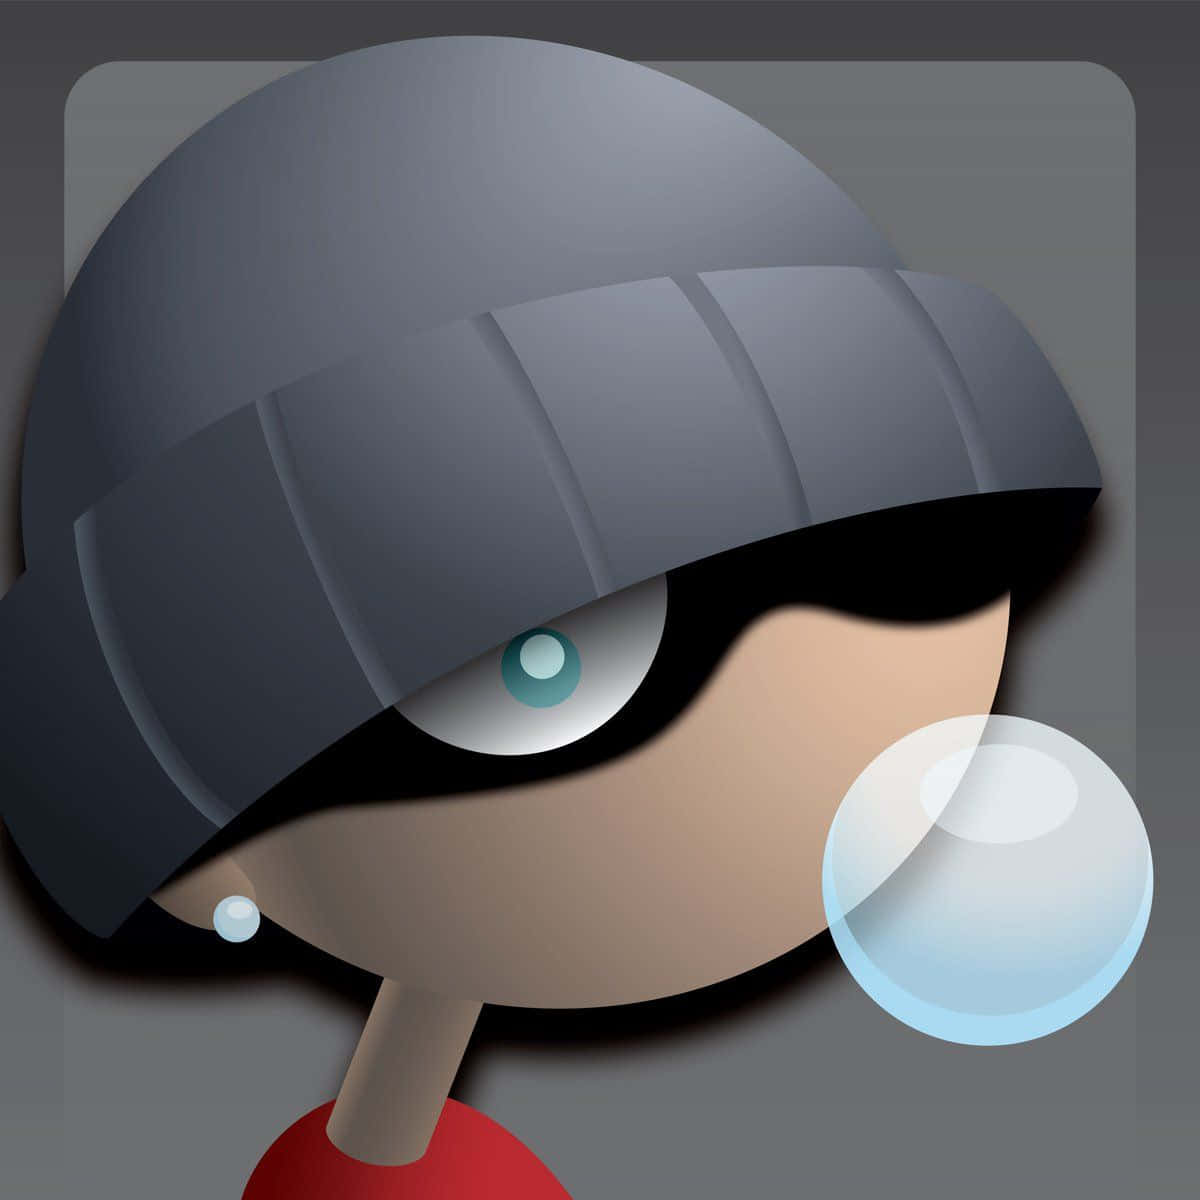 Emo Bubble Gum Cool Xbox Profile Picture